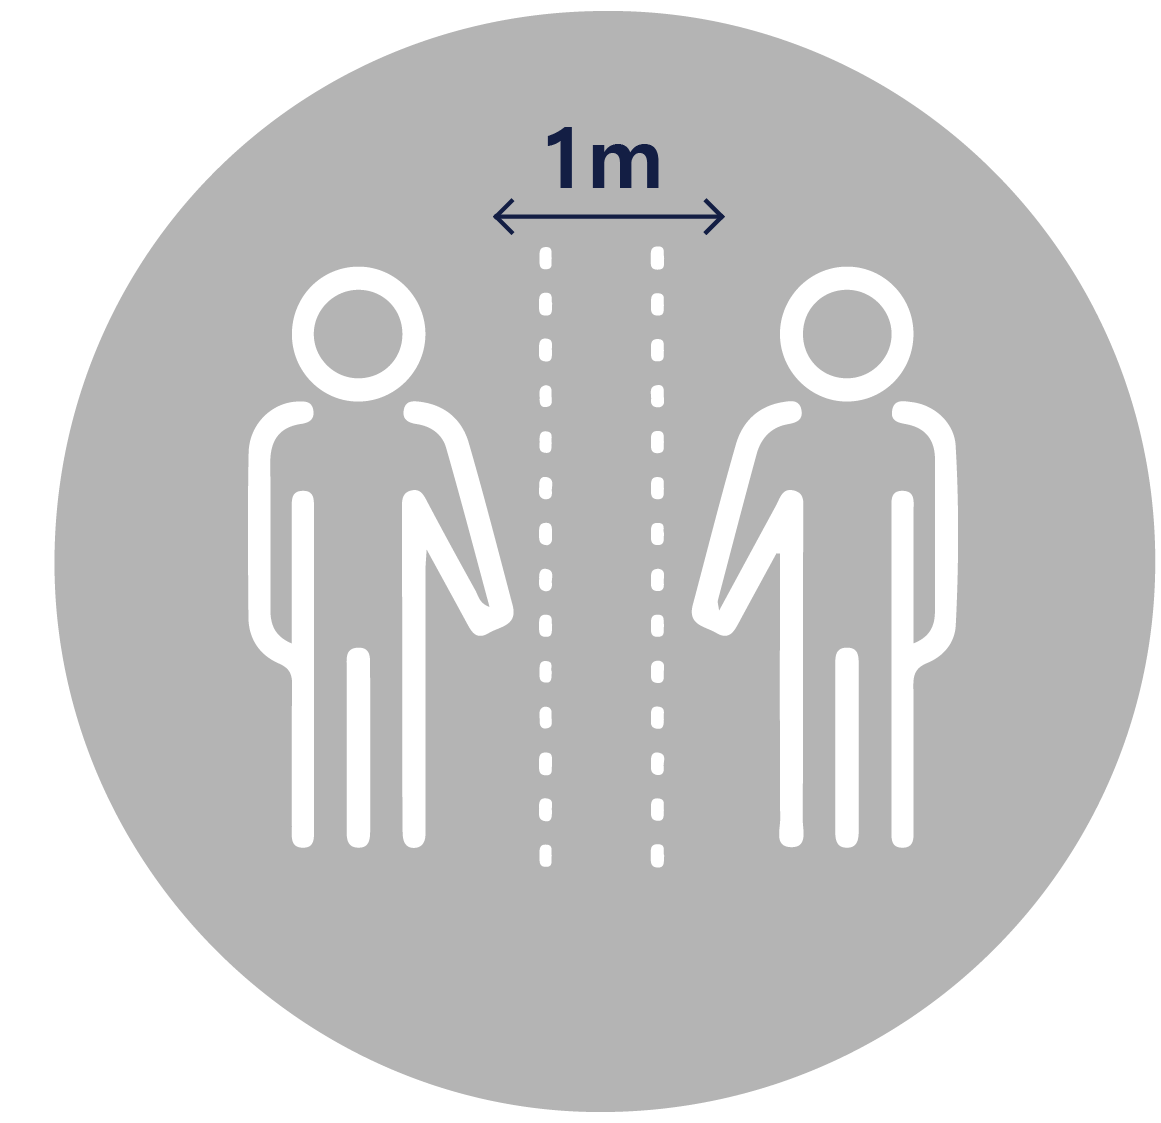 Graphic depicting 1 meter distance between individuals